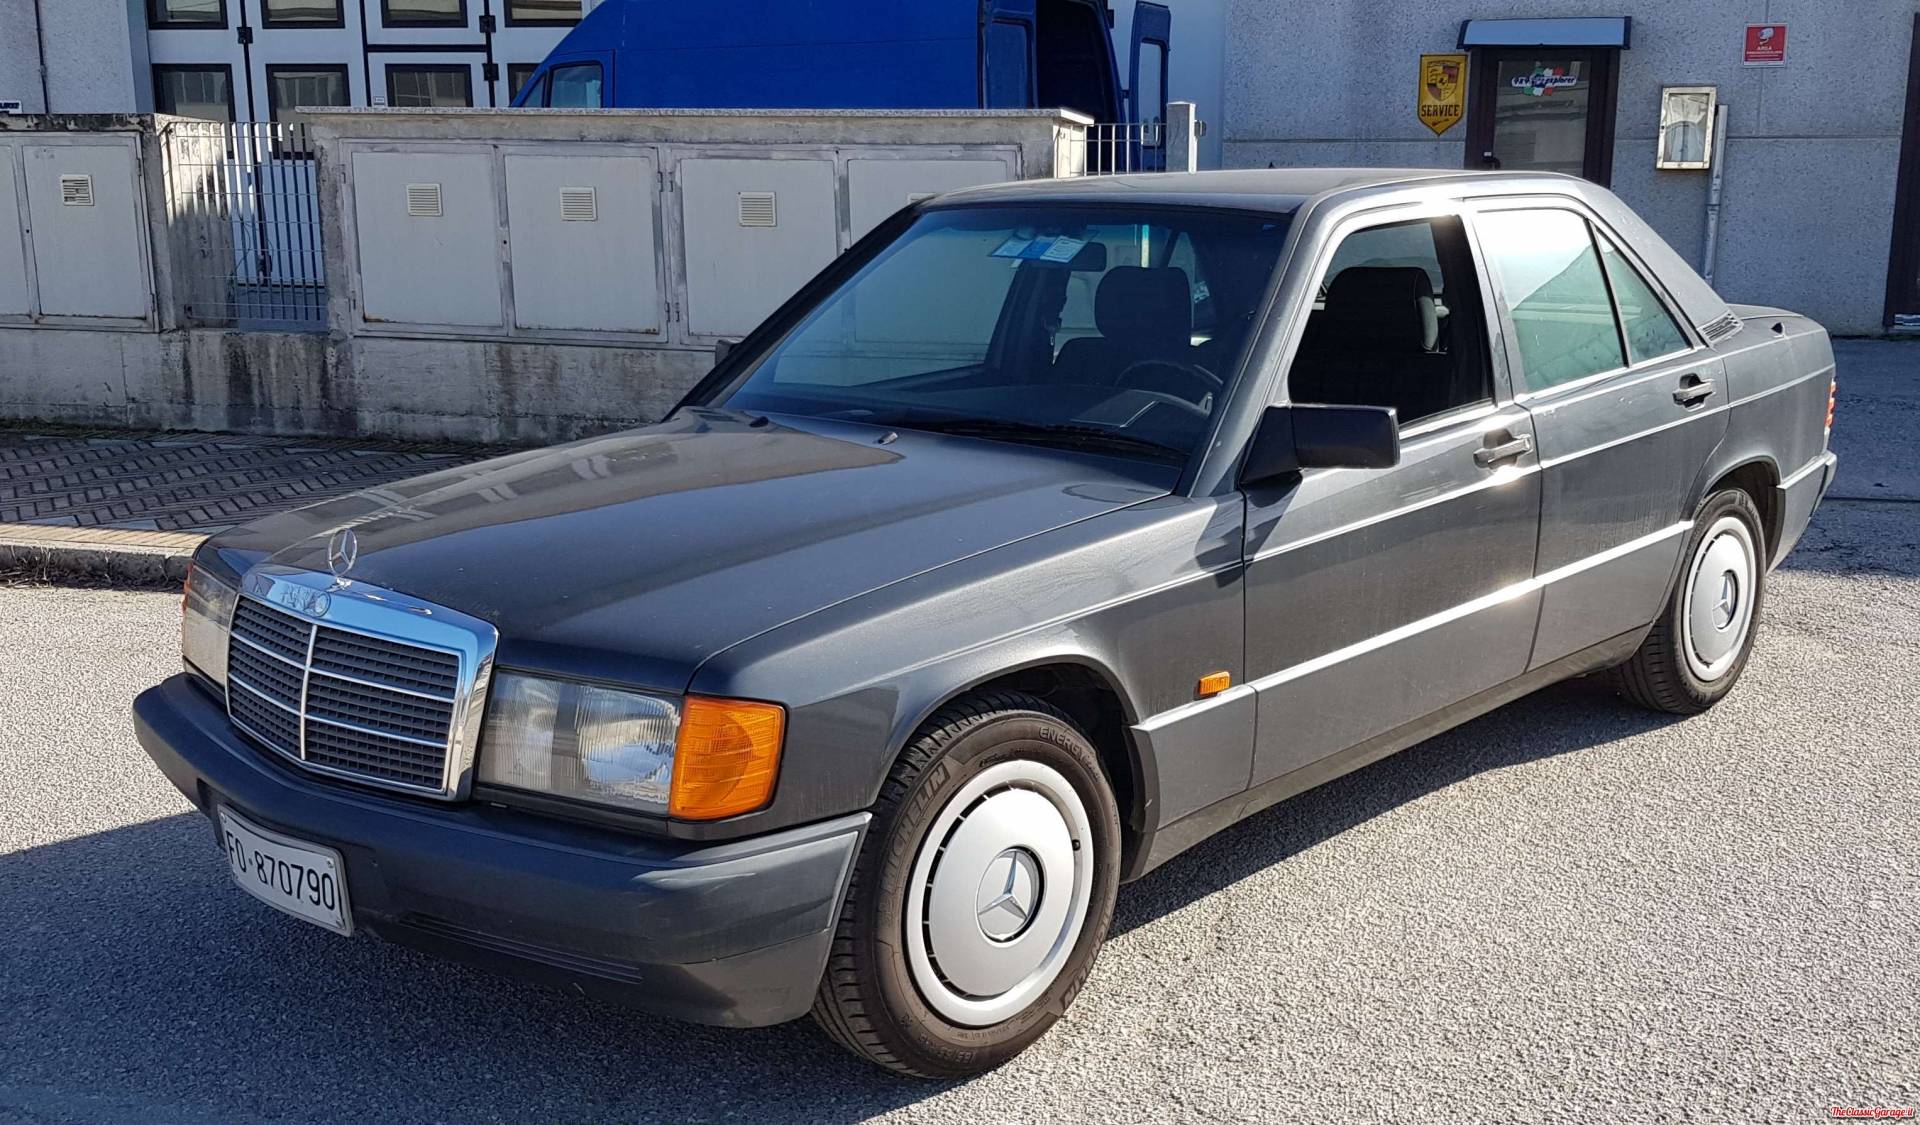 MercedesBenz 190 E 1.8 (1993) für CHF 3'750 kaufen